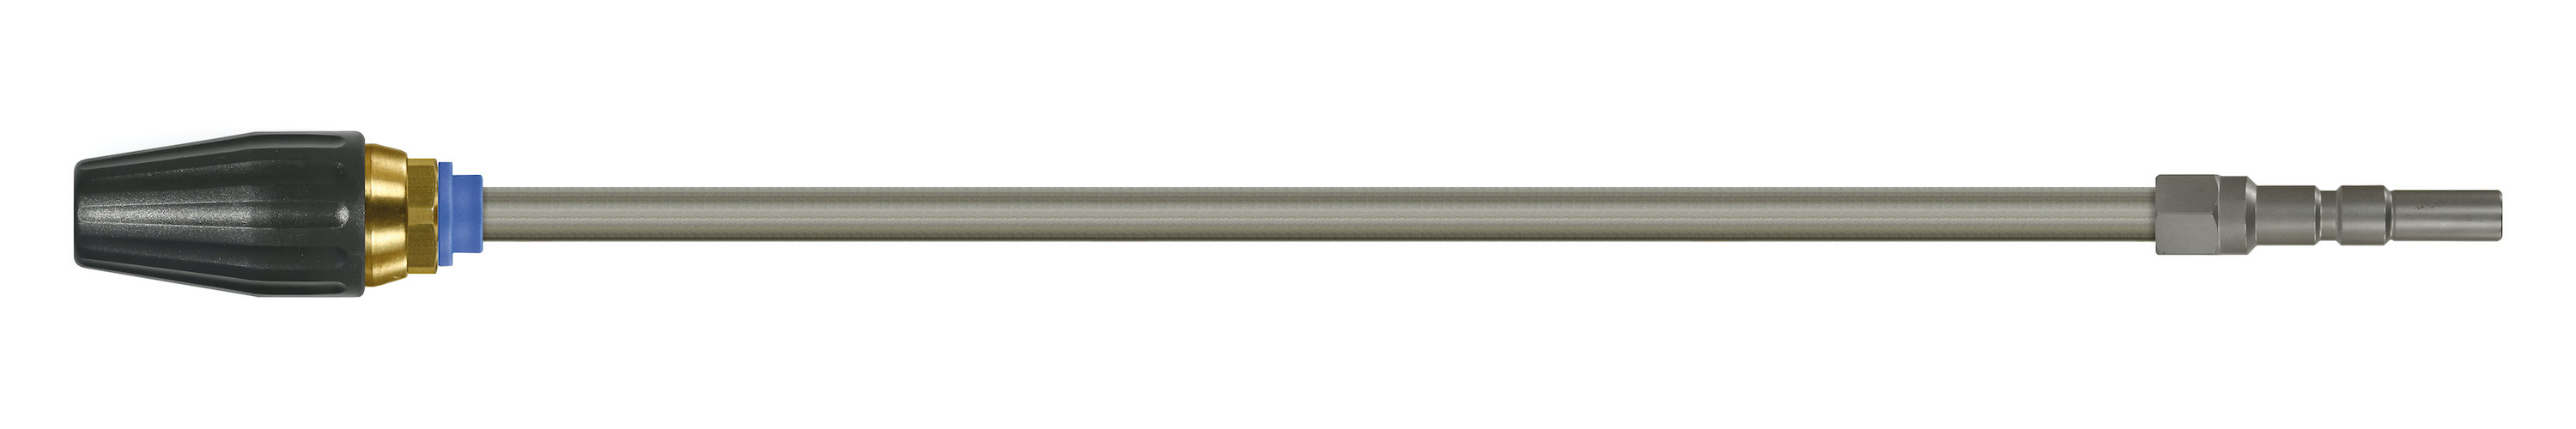 Coupleur KW. Lances tube zingué avec rotabuse ST-357.1. Cône 20°. 100 - 250 bar. Max. 100 °C, Calibre 040